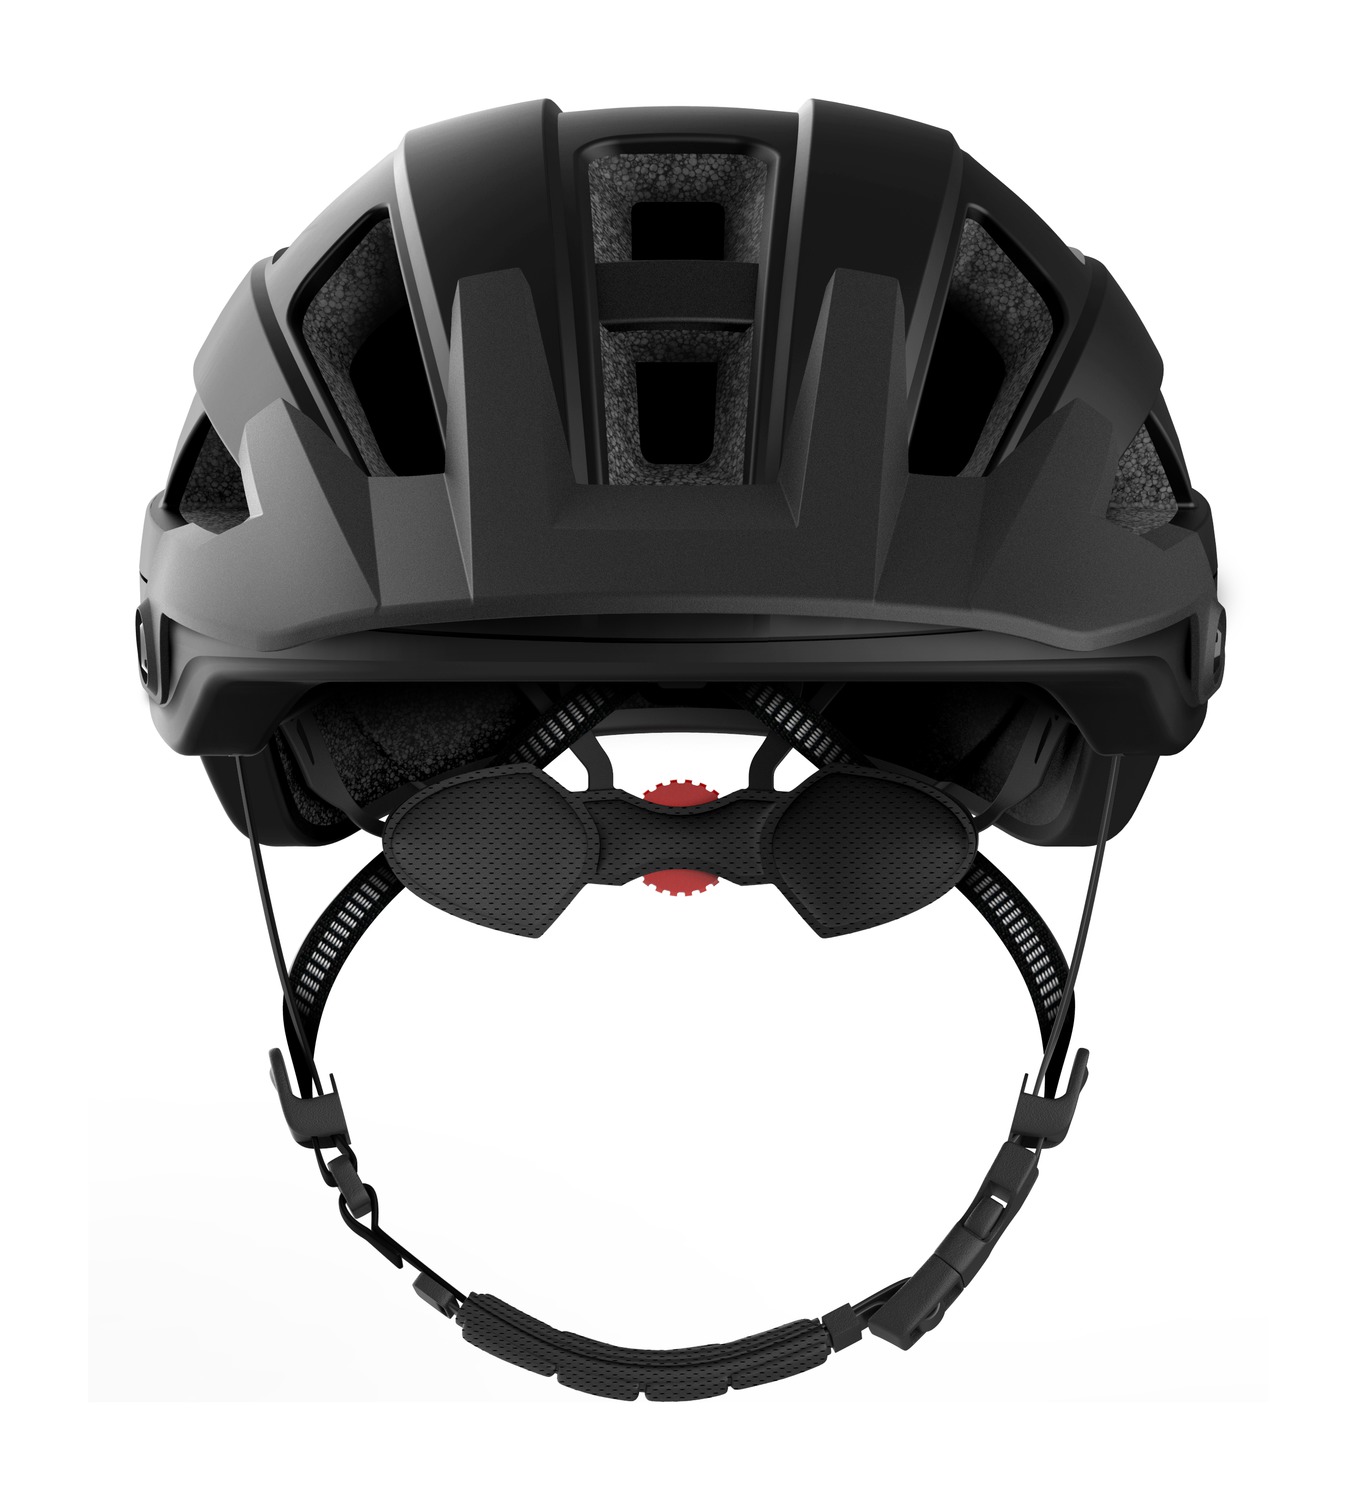 M1 EVO, Sena Smart MTB Helmet, Matt Black (New Processor)